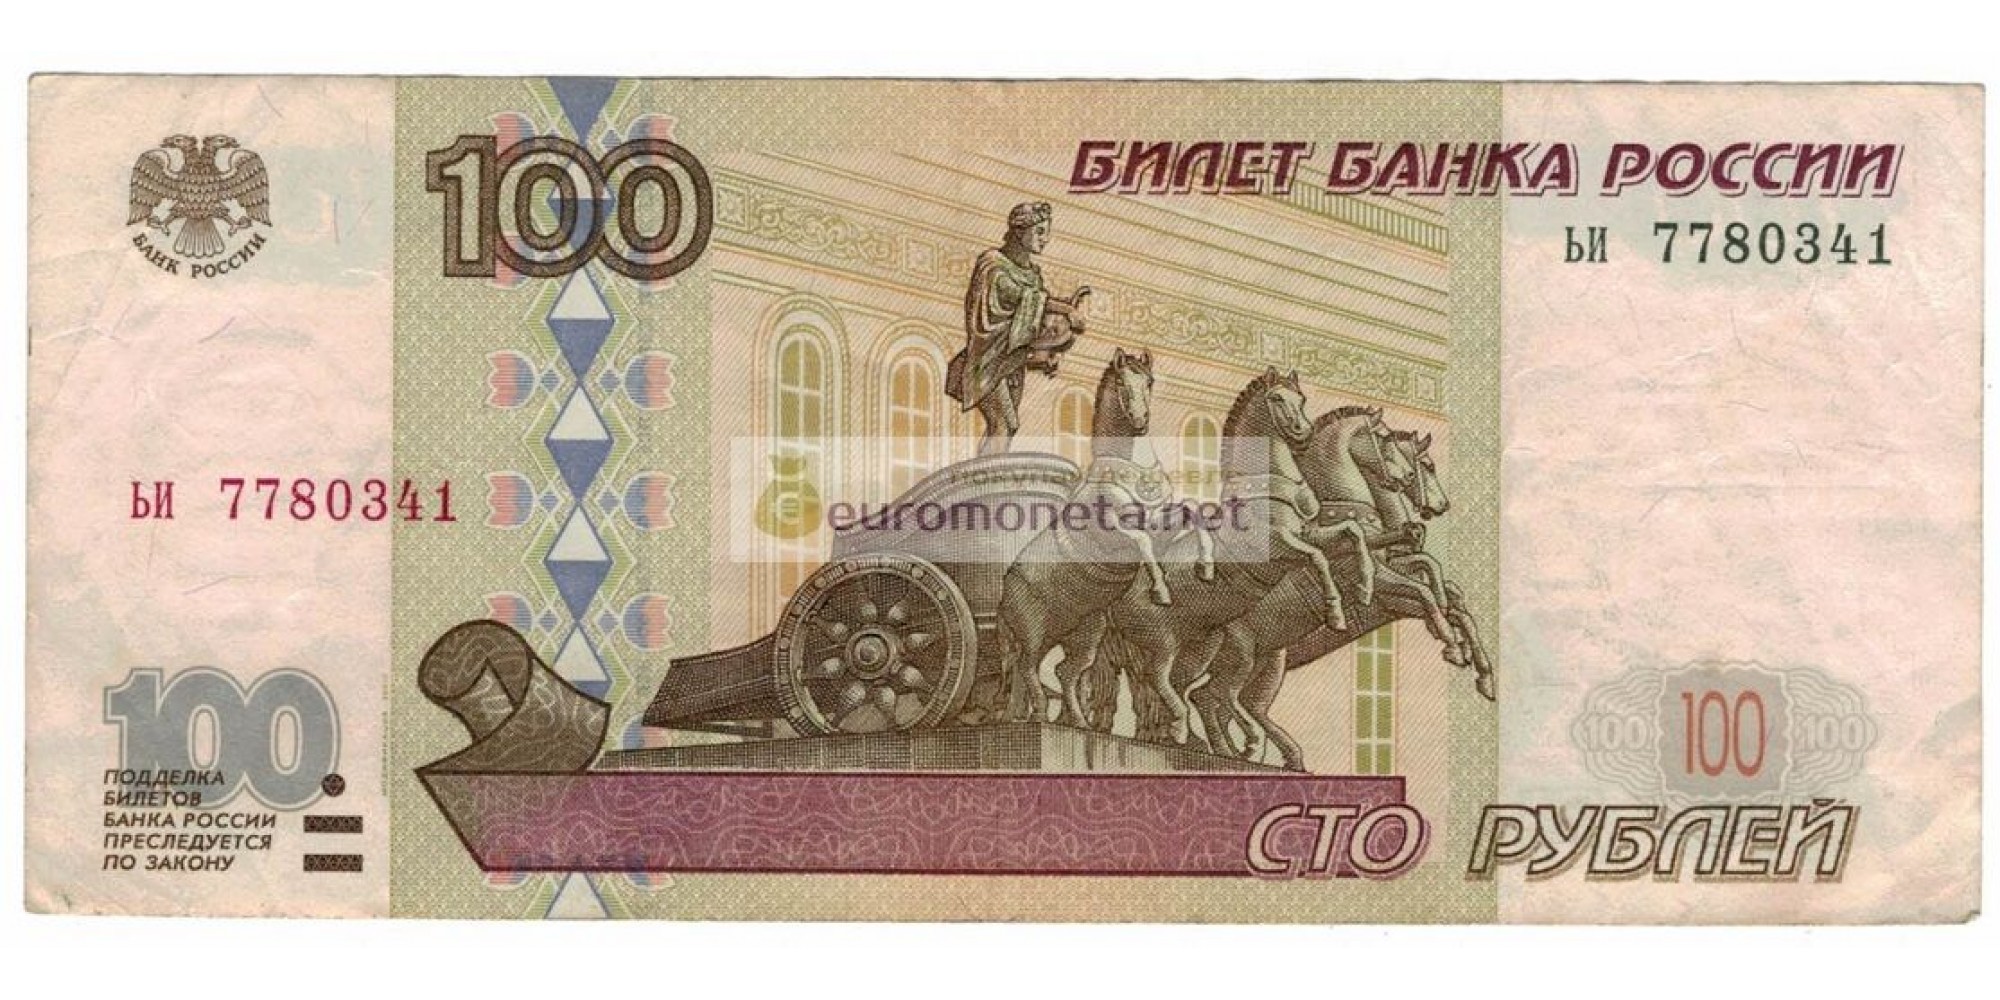 Россия 100 рублей 1997 год модификация 2001 год серия ьи 7780341